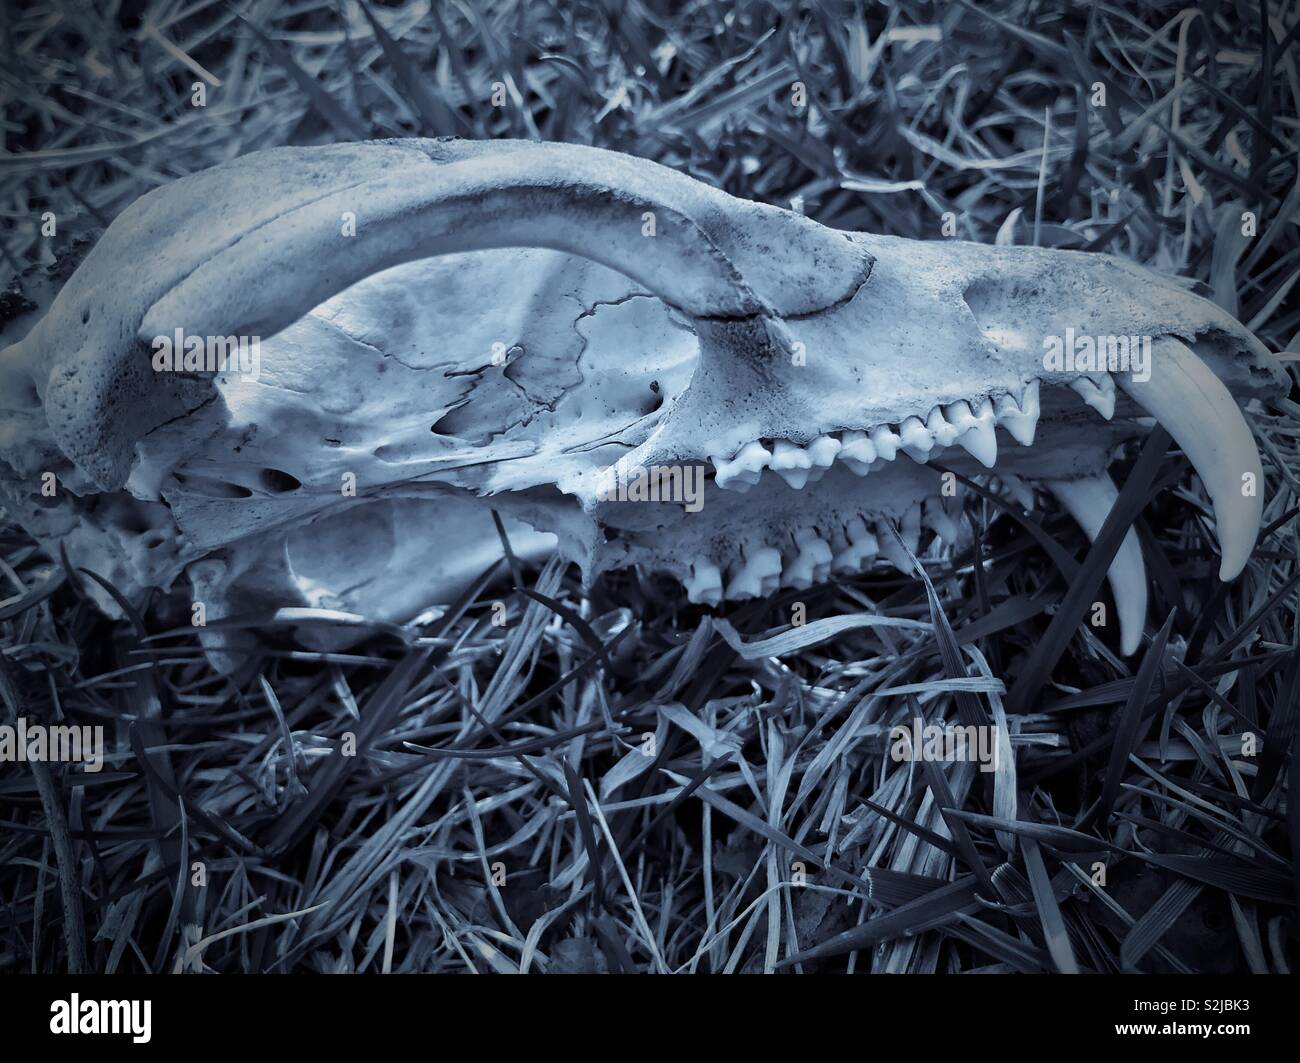 Bläuliche sepia getont Foto von Jugendlichen coyote Schädel im Hof gefunden Stockfoto